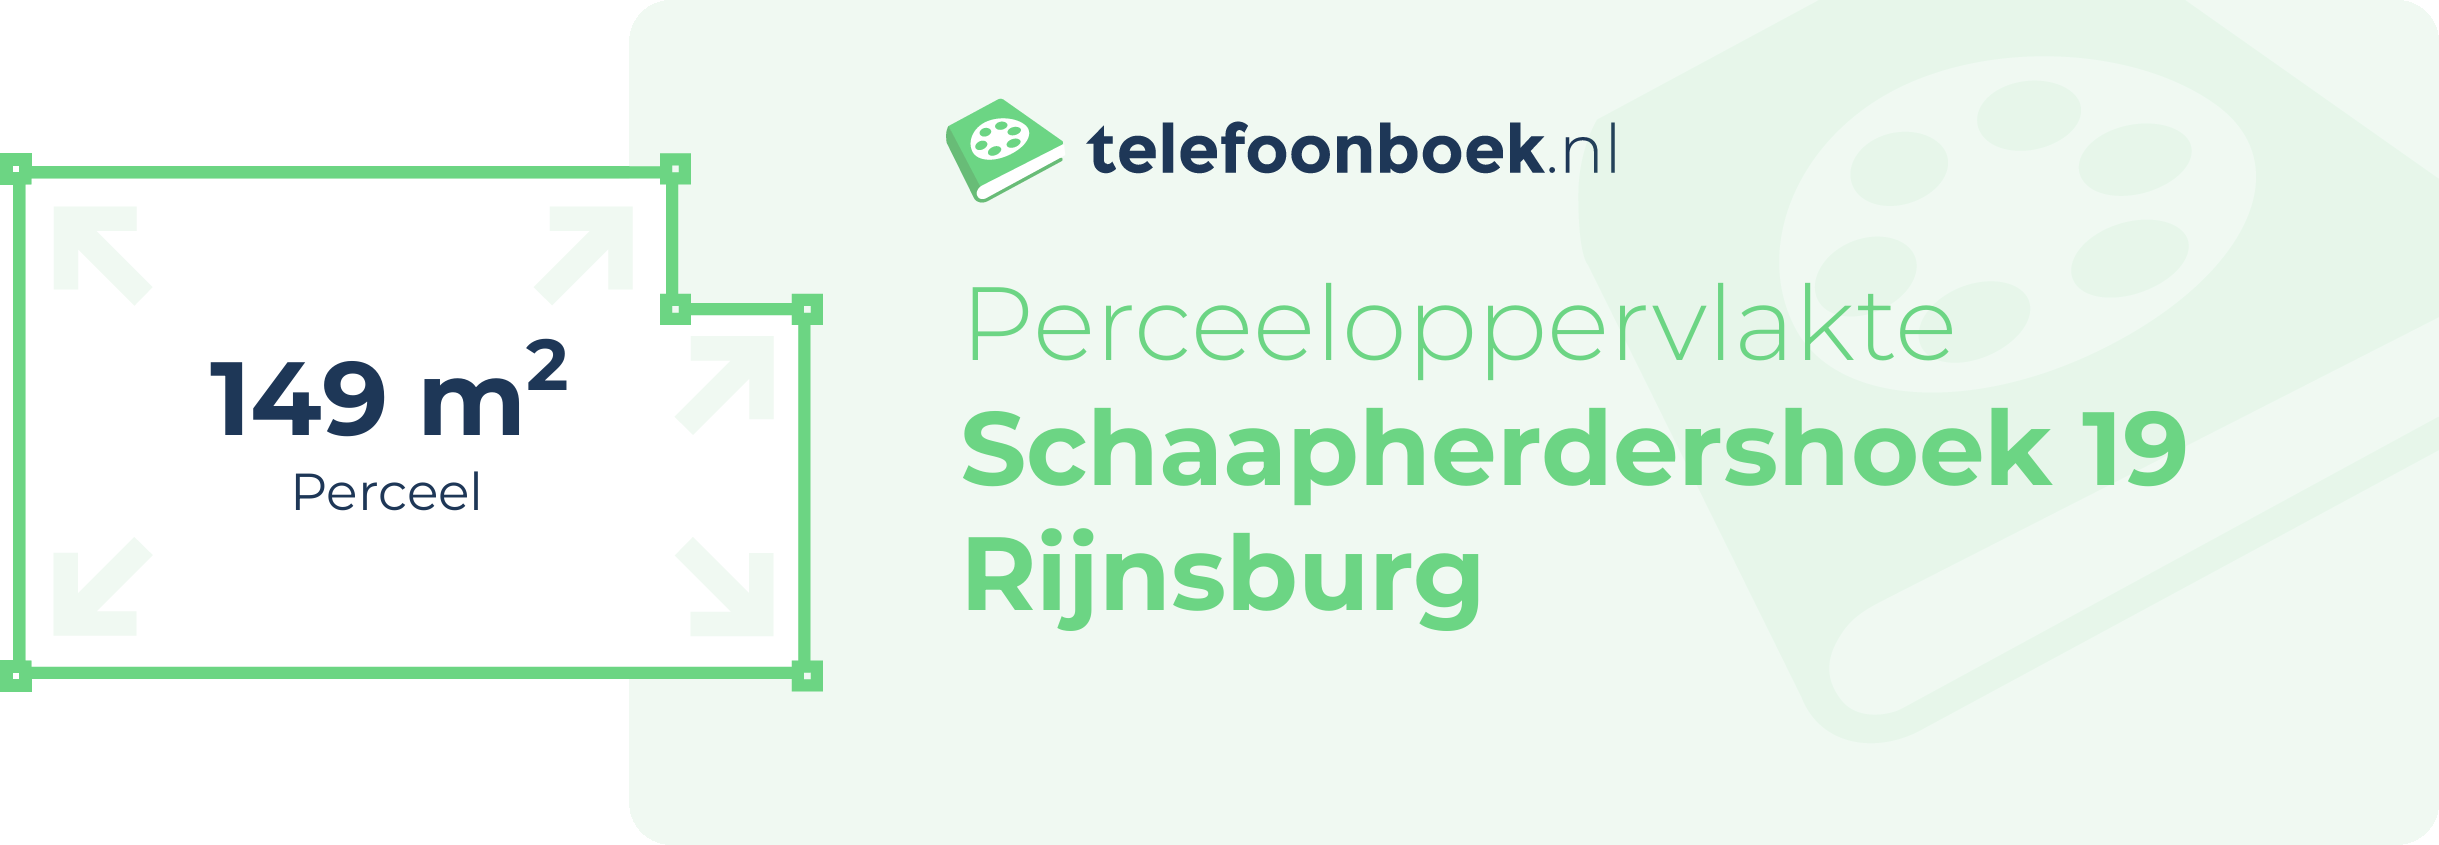 Perceeloppervlakte Schaapherdershoek 19 Rijnsburg